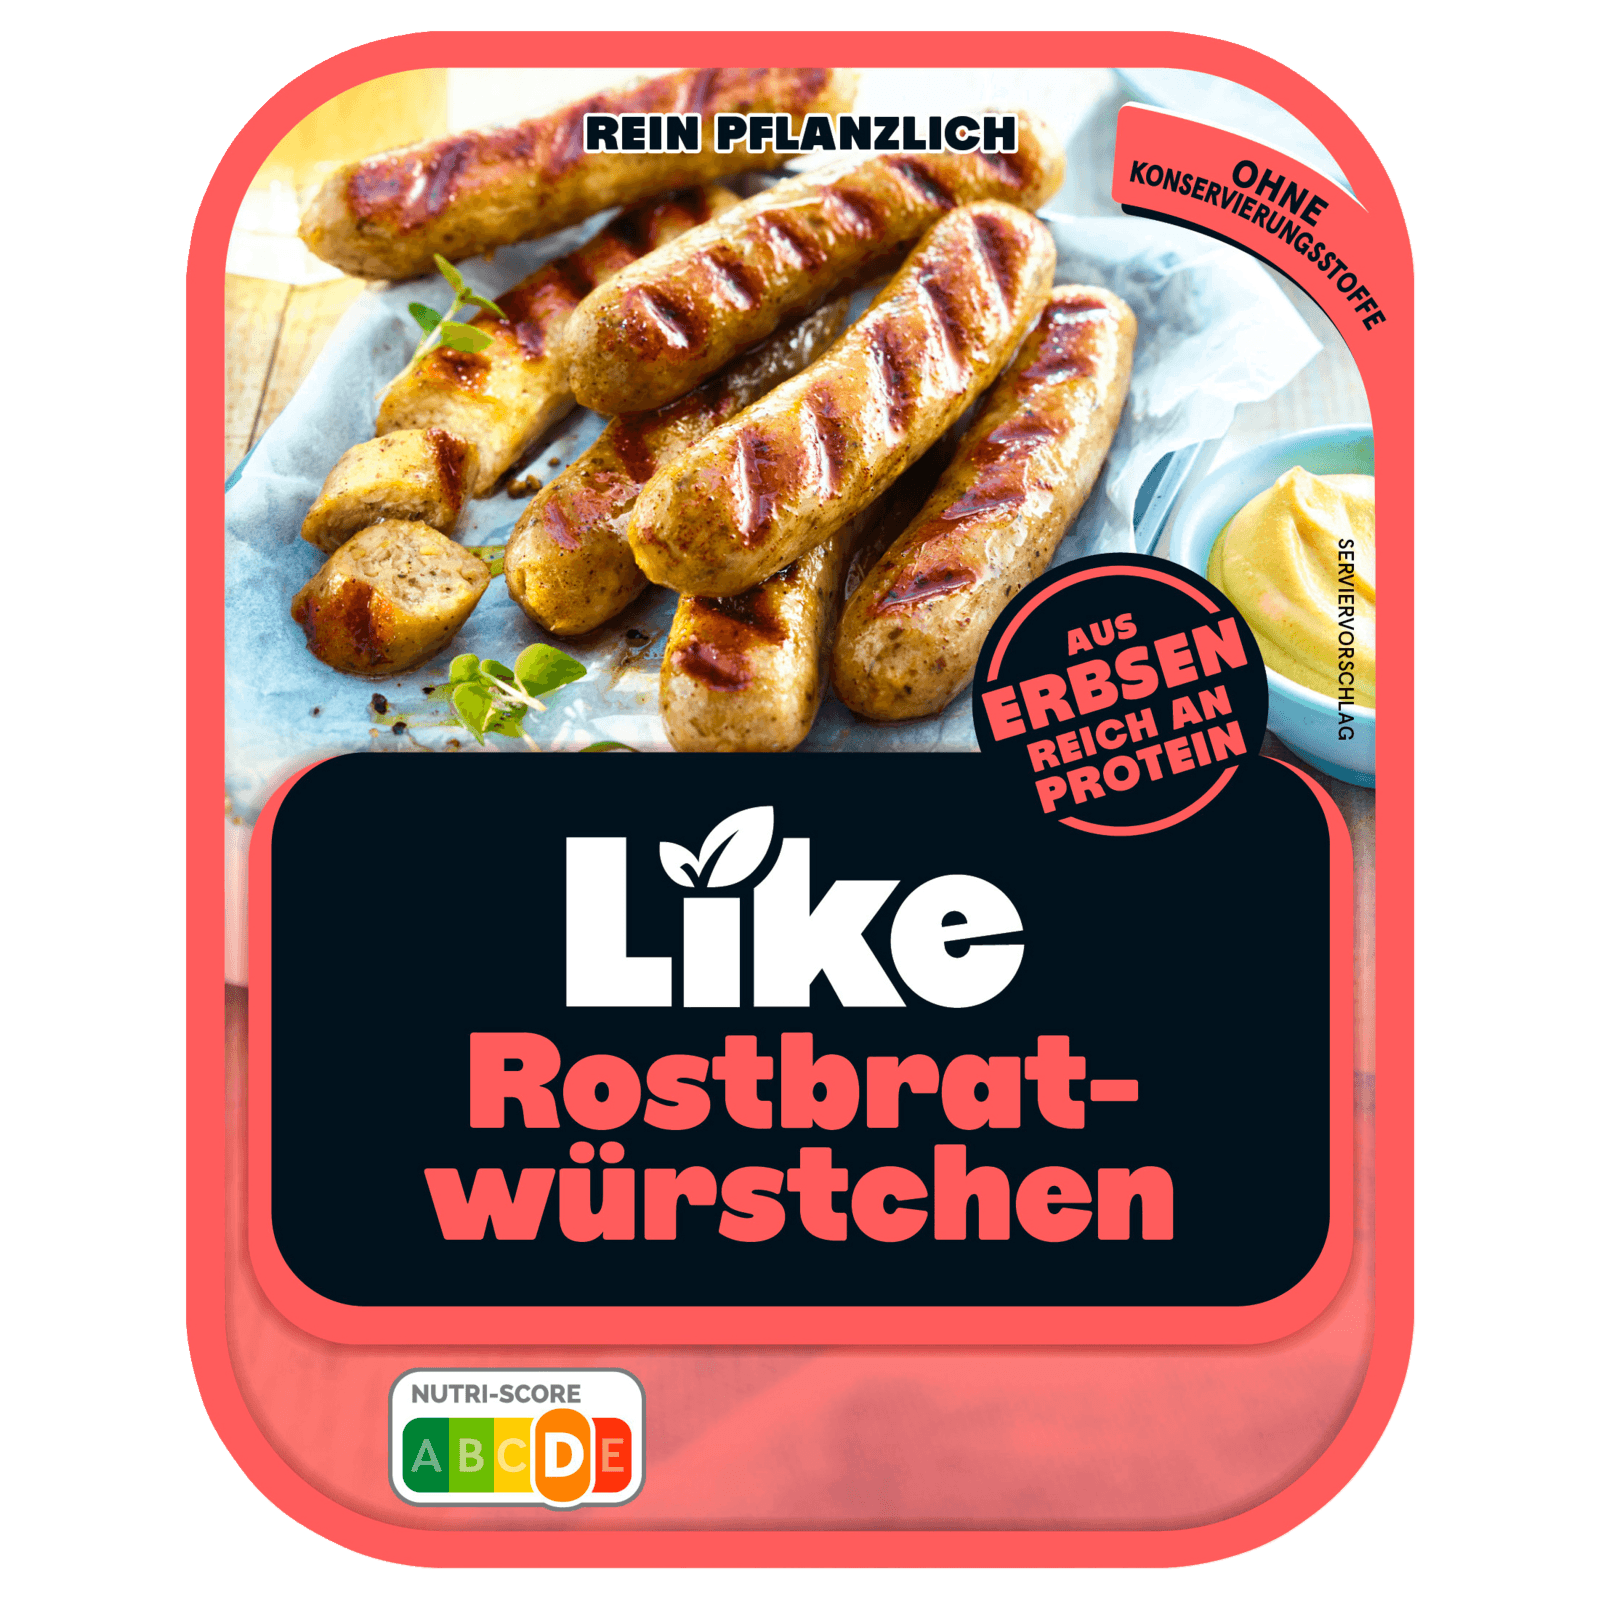 LikeMeat Like Rostbratwürstchen vegan 175g bei REWE online bestellen!